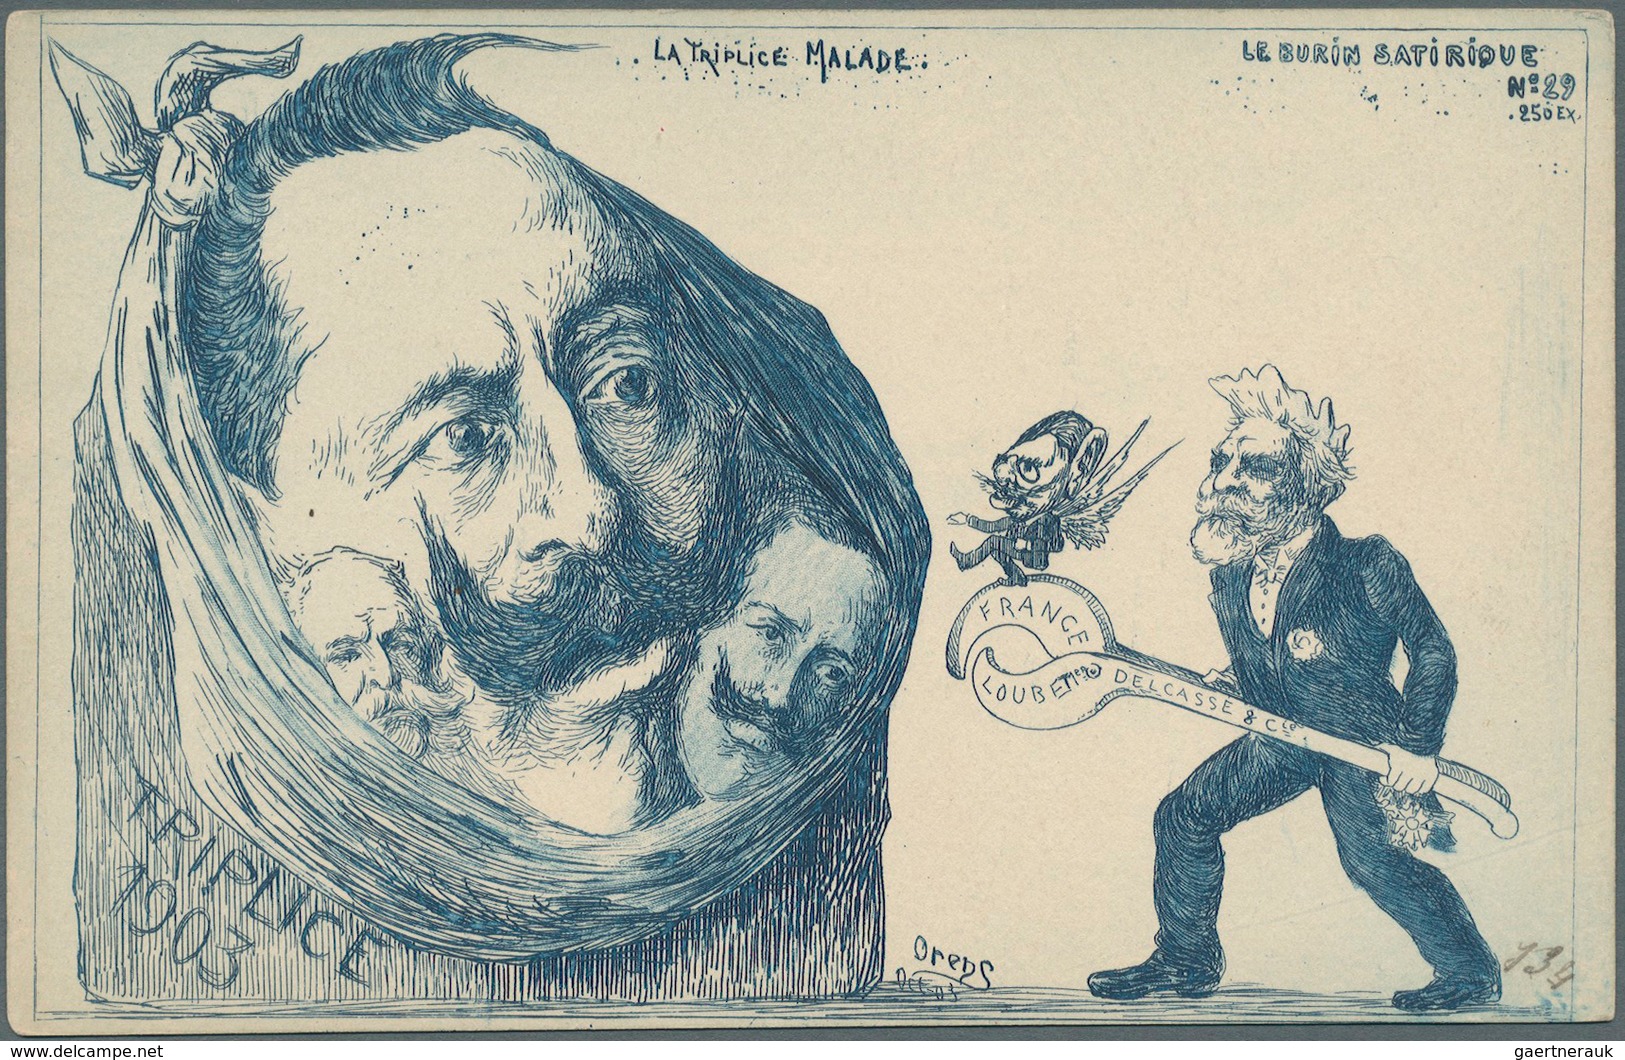 Ansichtskarten: Künstler / Artists: Orens Denizard, Le Burin Satirique, Karte Nr. 29, Auflage 250 St - Ohne Zuordnung